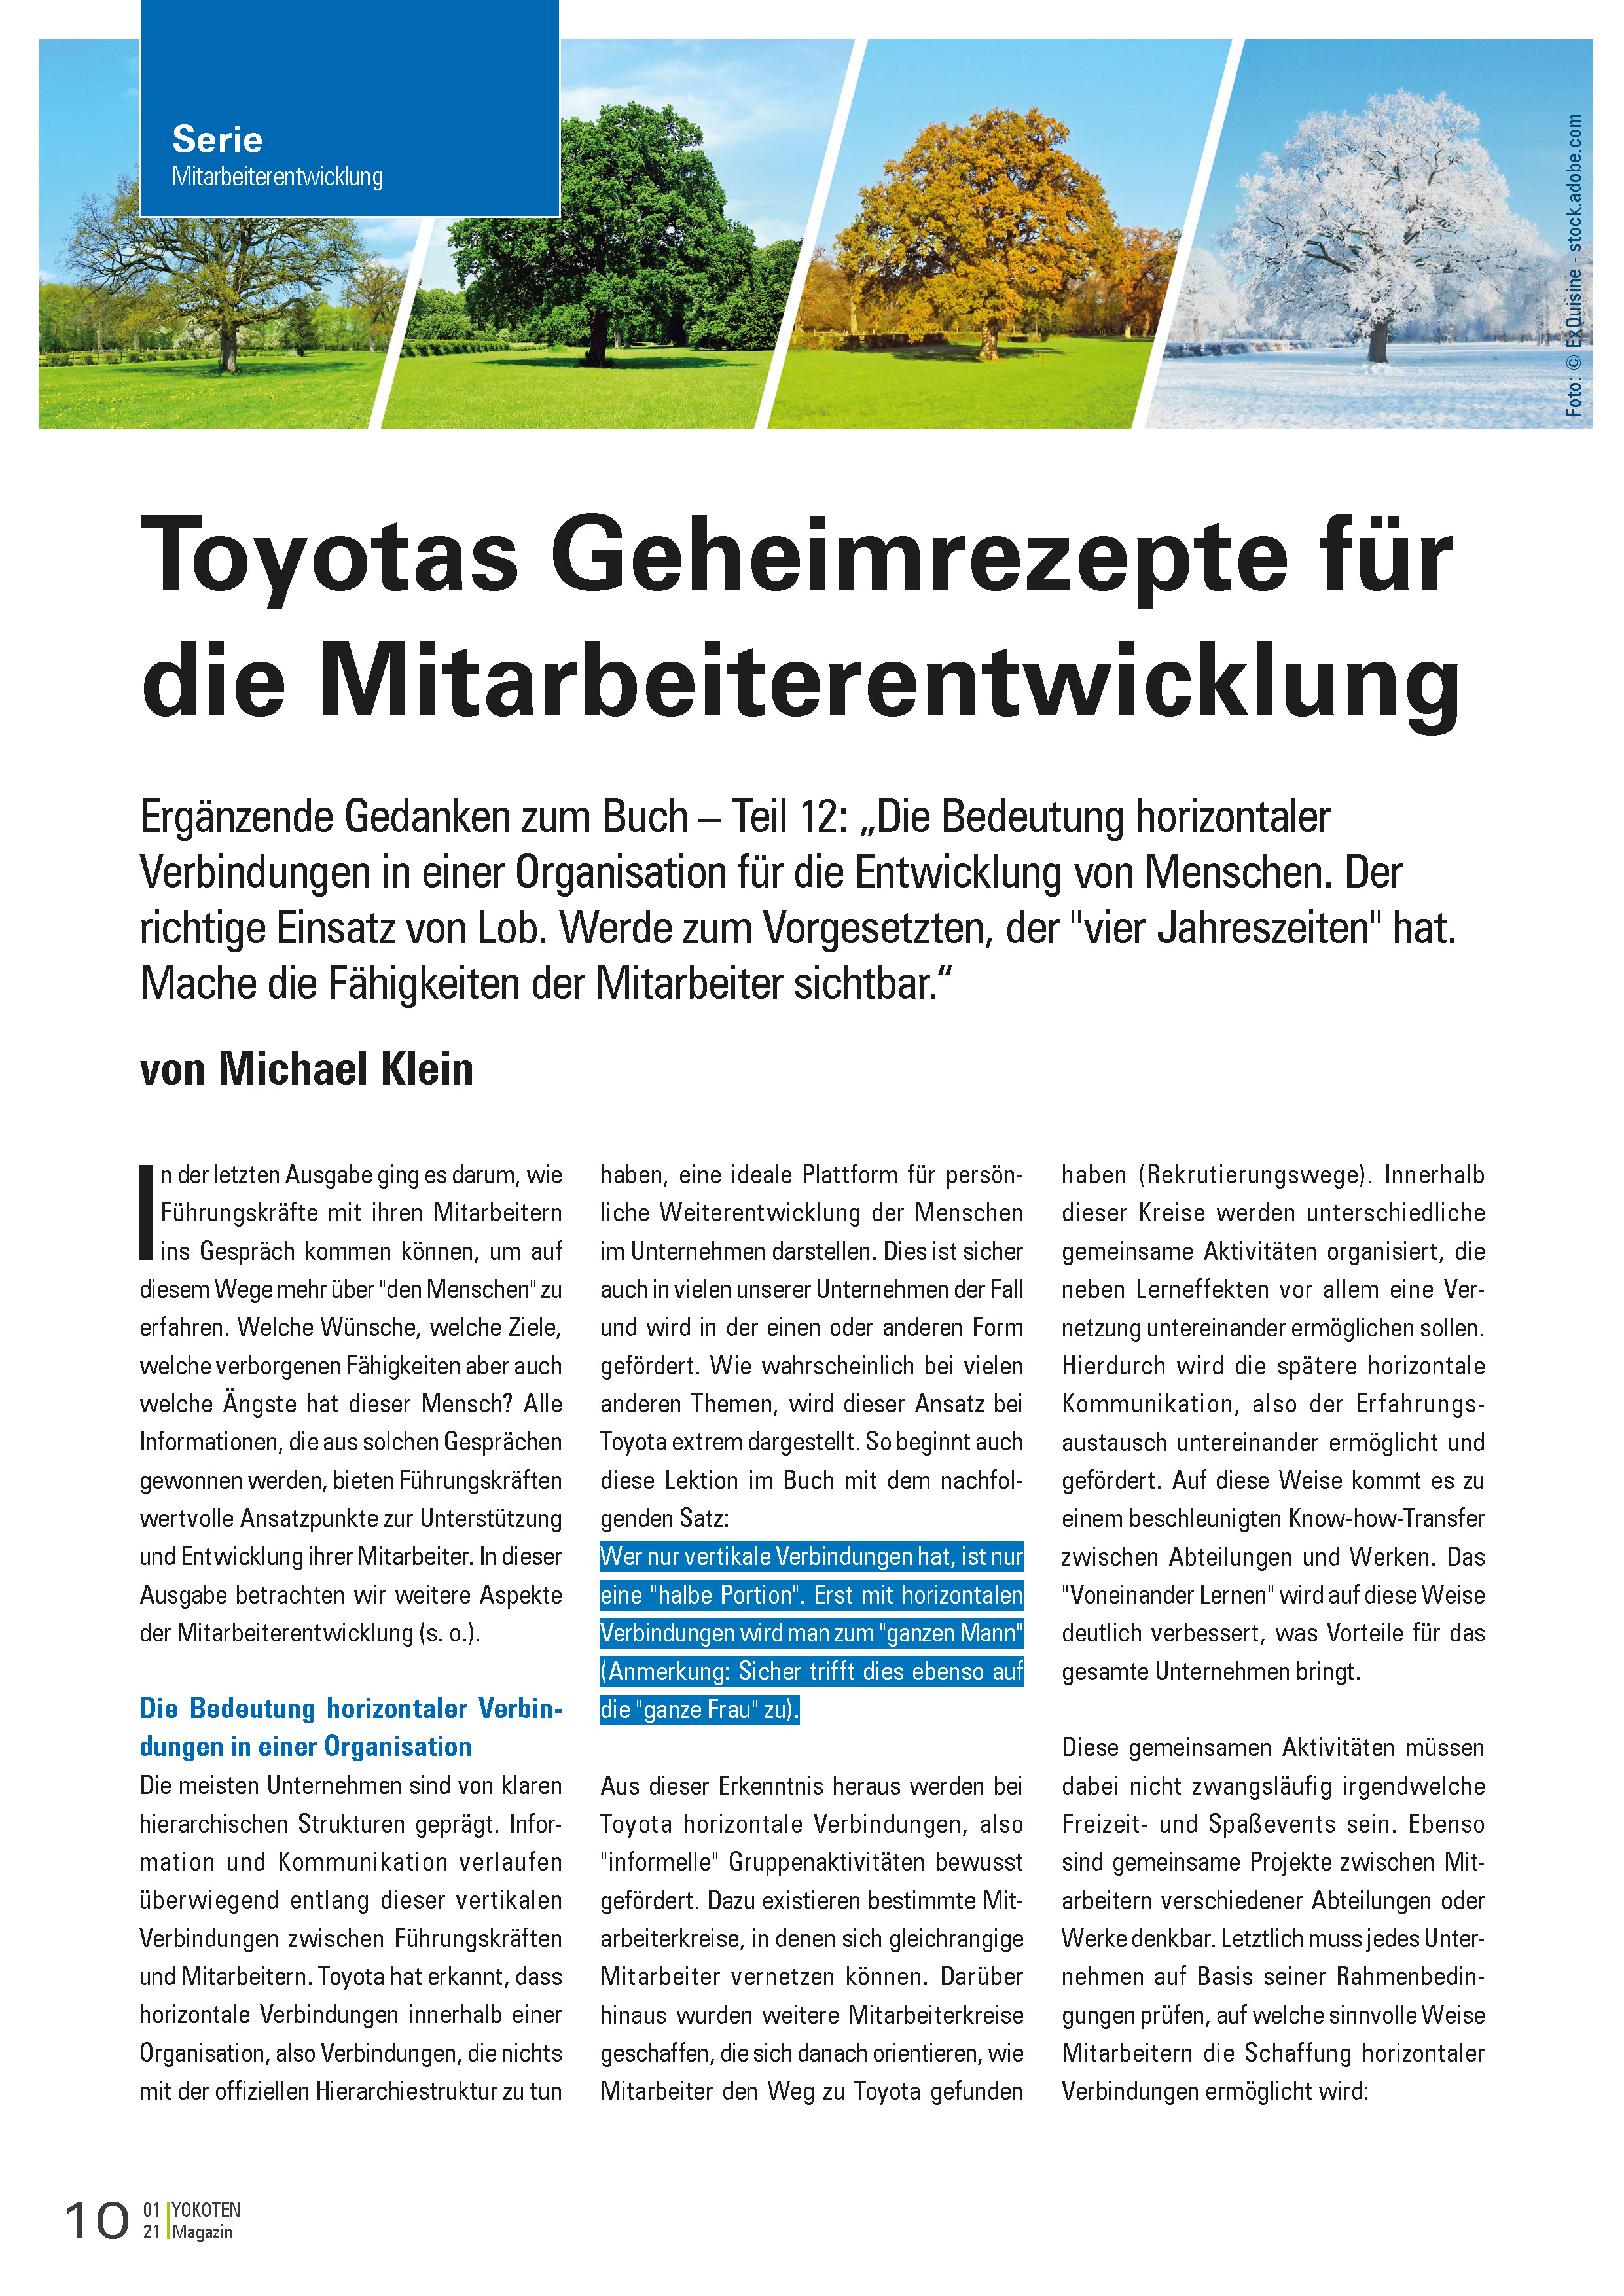 Toyotas Geheimrezepte für die Mitarbeiterentwicklung, Teil 12  - Artikel aus Fachmagazin YOKOTEN 2021-01